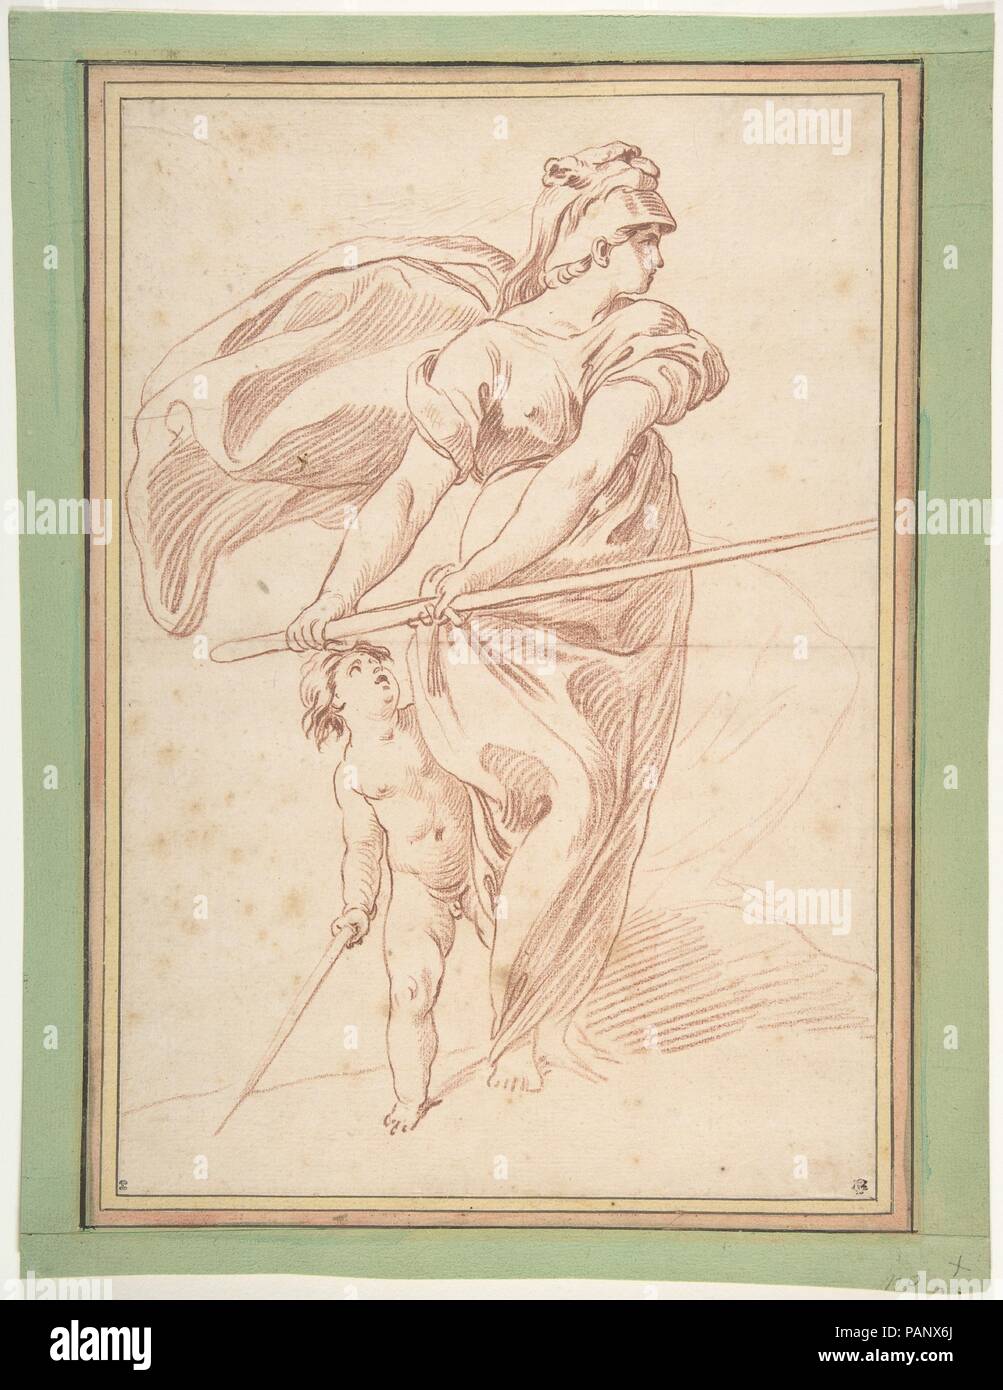 La Guerre. Artist: Edme Bouchardon (French, Chaumont 1698-1762 Paris). Dimensions: 12 11/16 x 8 13/16 in.  (32.2 x 22.4 cm). Museum: Metropolitan Museum of Art, New York, USA. Stock Photo